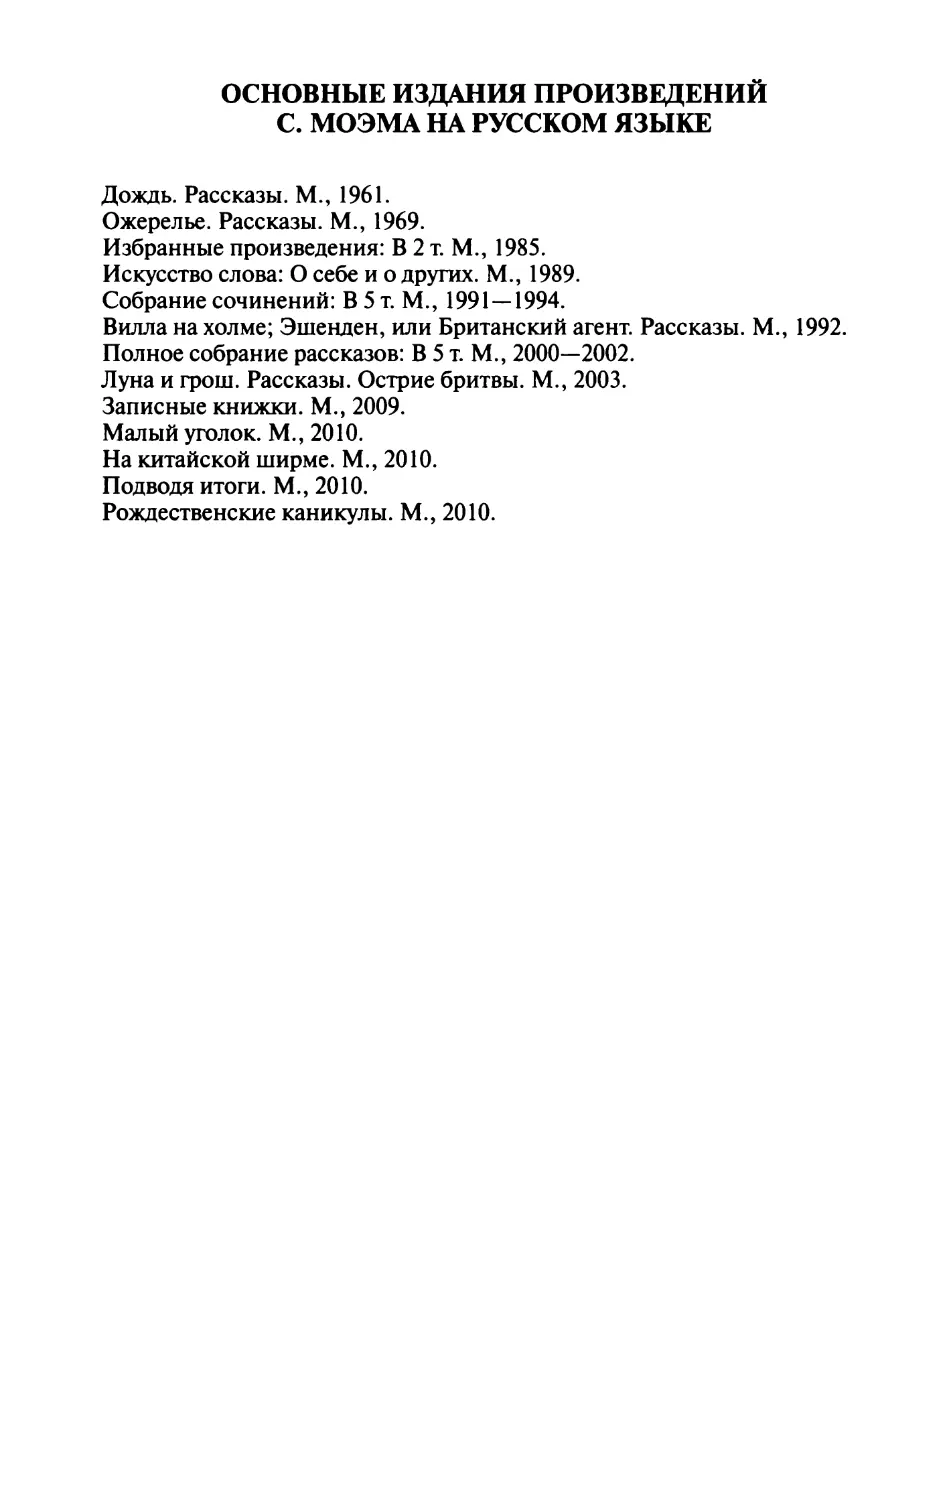 Основные издания произведений С. Моэма на русском языке